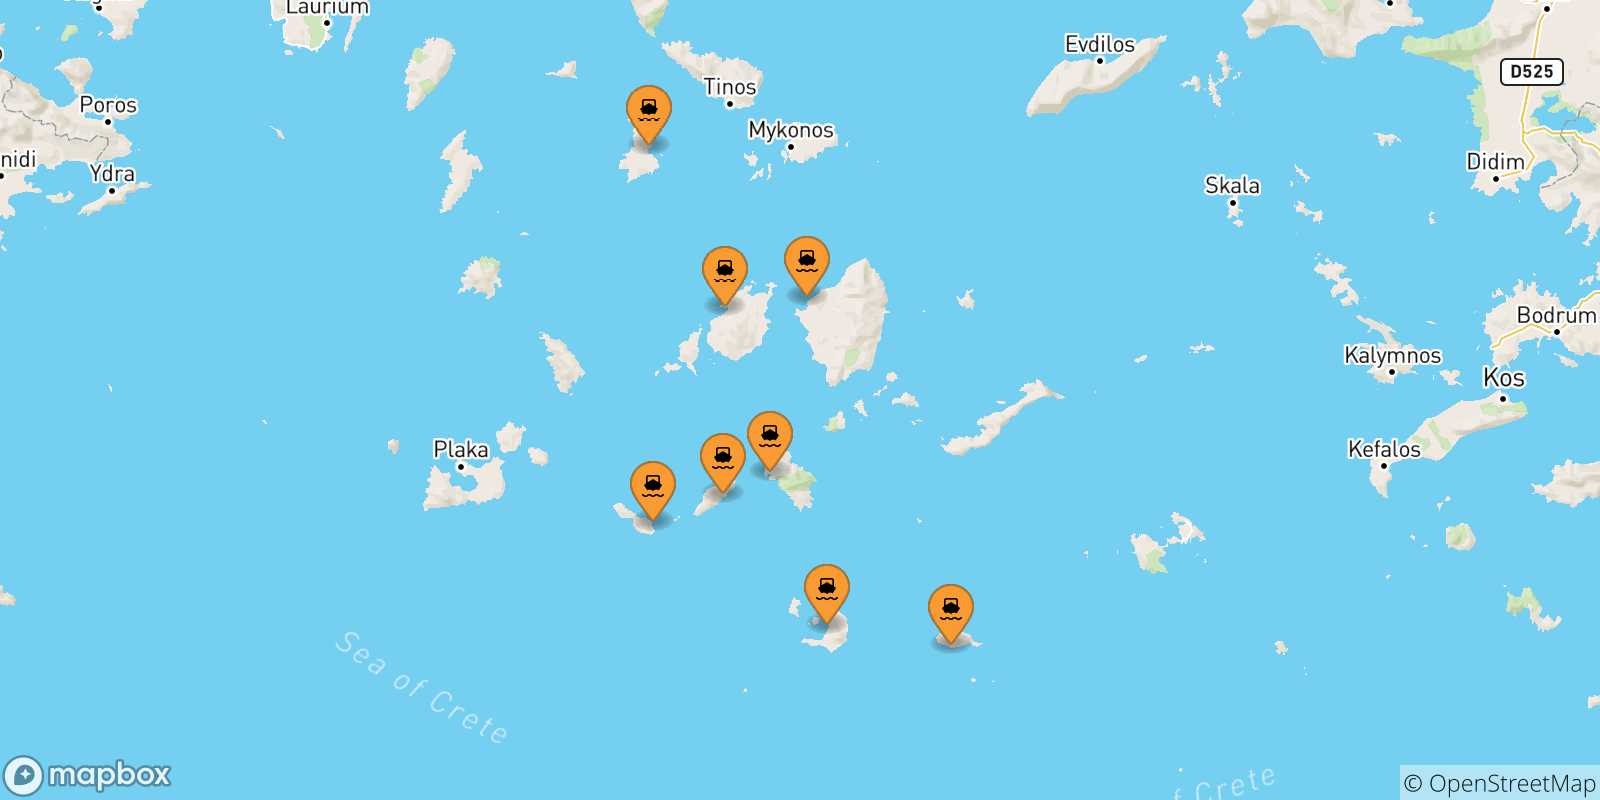 Mappa delle possibili rotte tra le Isole Cicladi e Thirassia